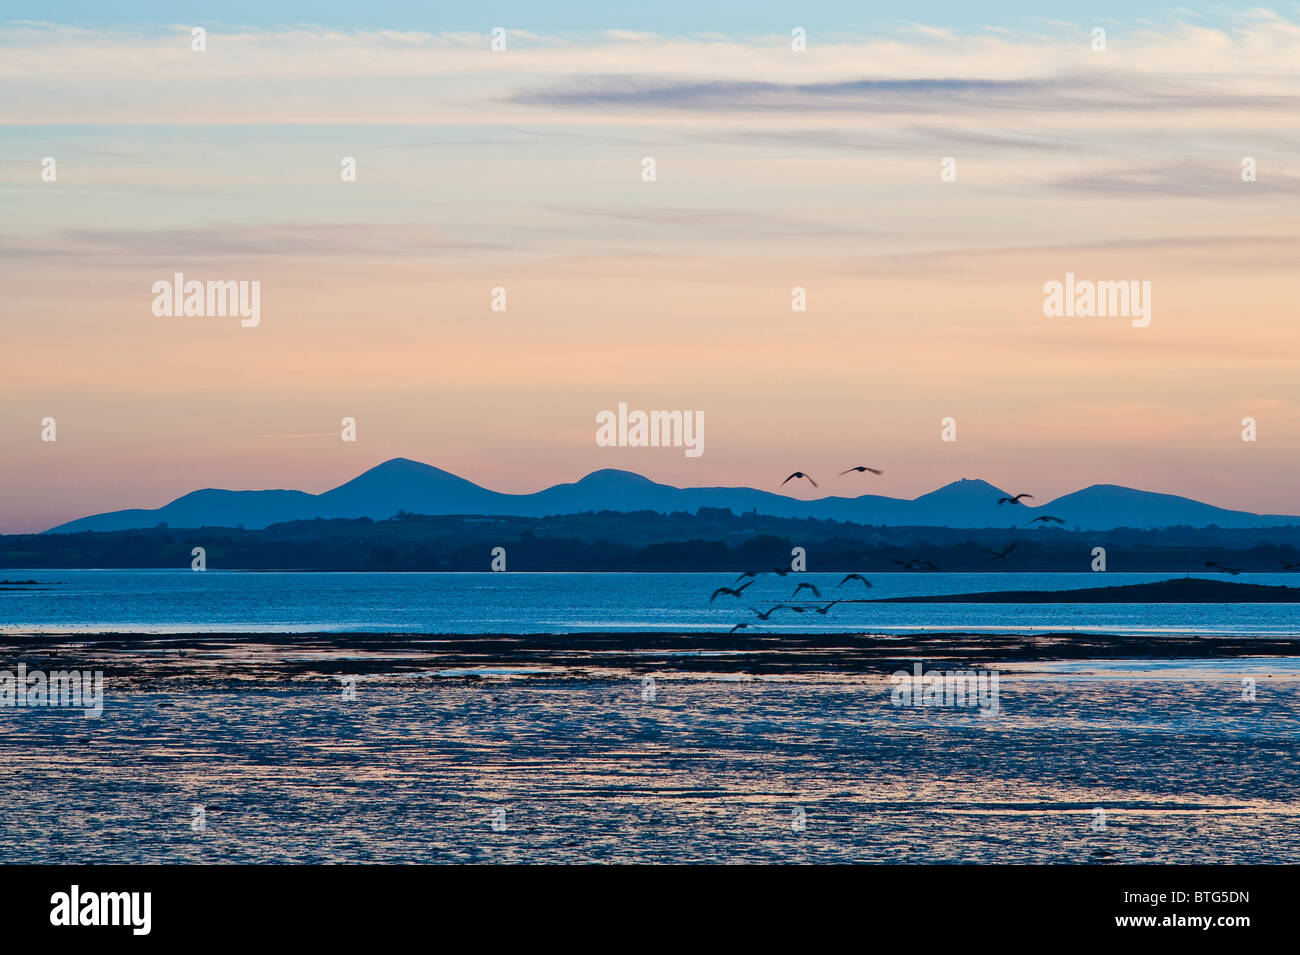 Kanadagänse fliegen bei Sonnenuntergang in Richtung Mourne Mountains, vom Mount Stewart auf der Ards Peninsula über Strangford Lough, Nordirland gesehen Stockfoto